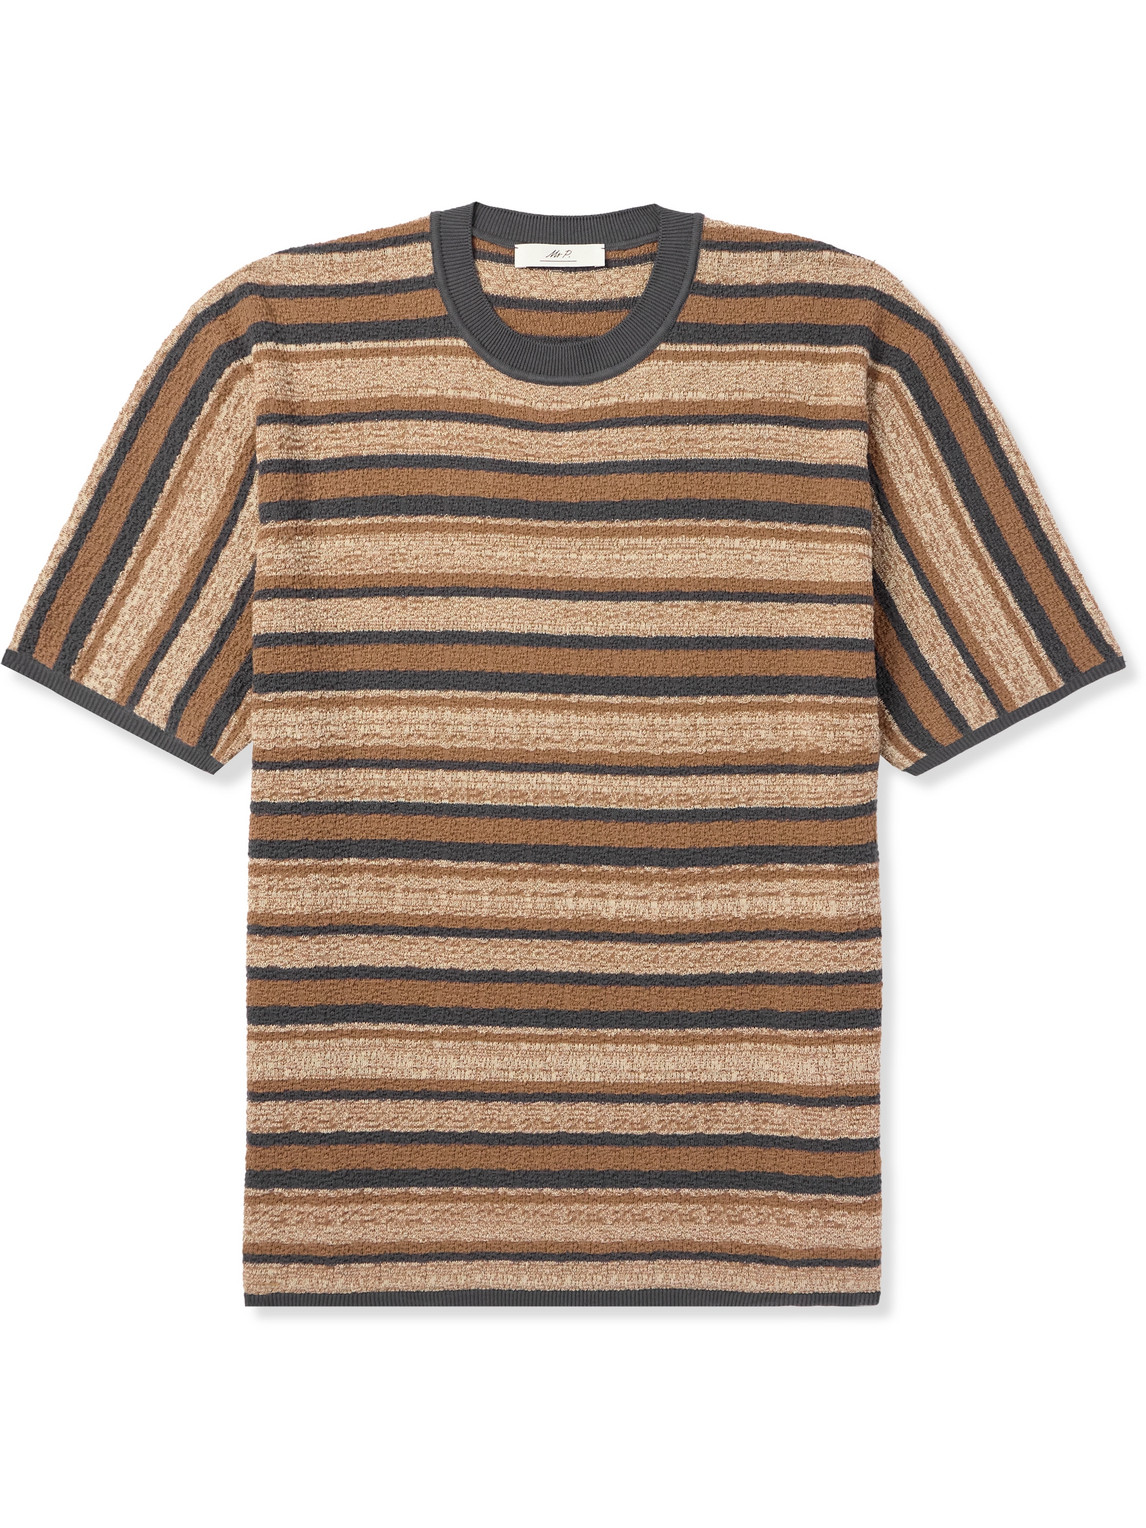 Mr P. - Striped Textured-Cotton T-Shirt - Men - Brown - M von Mr P.